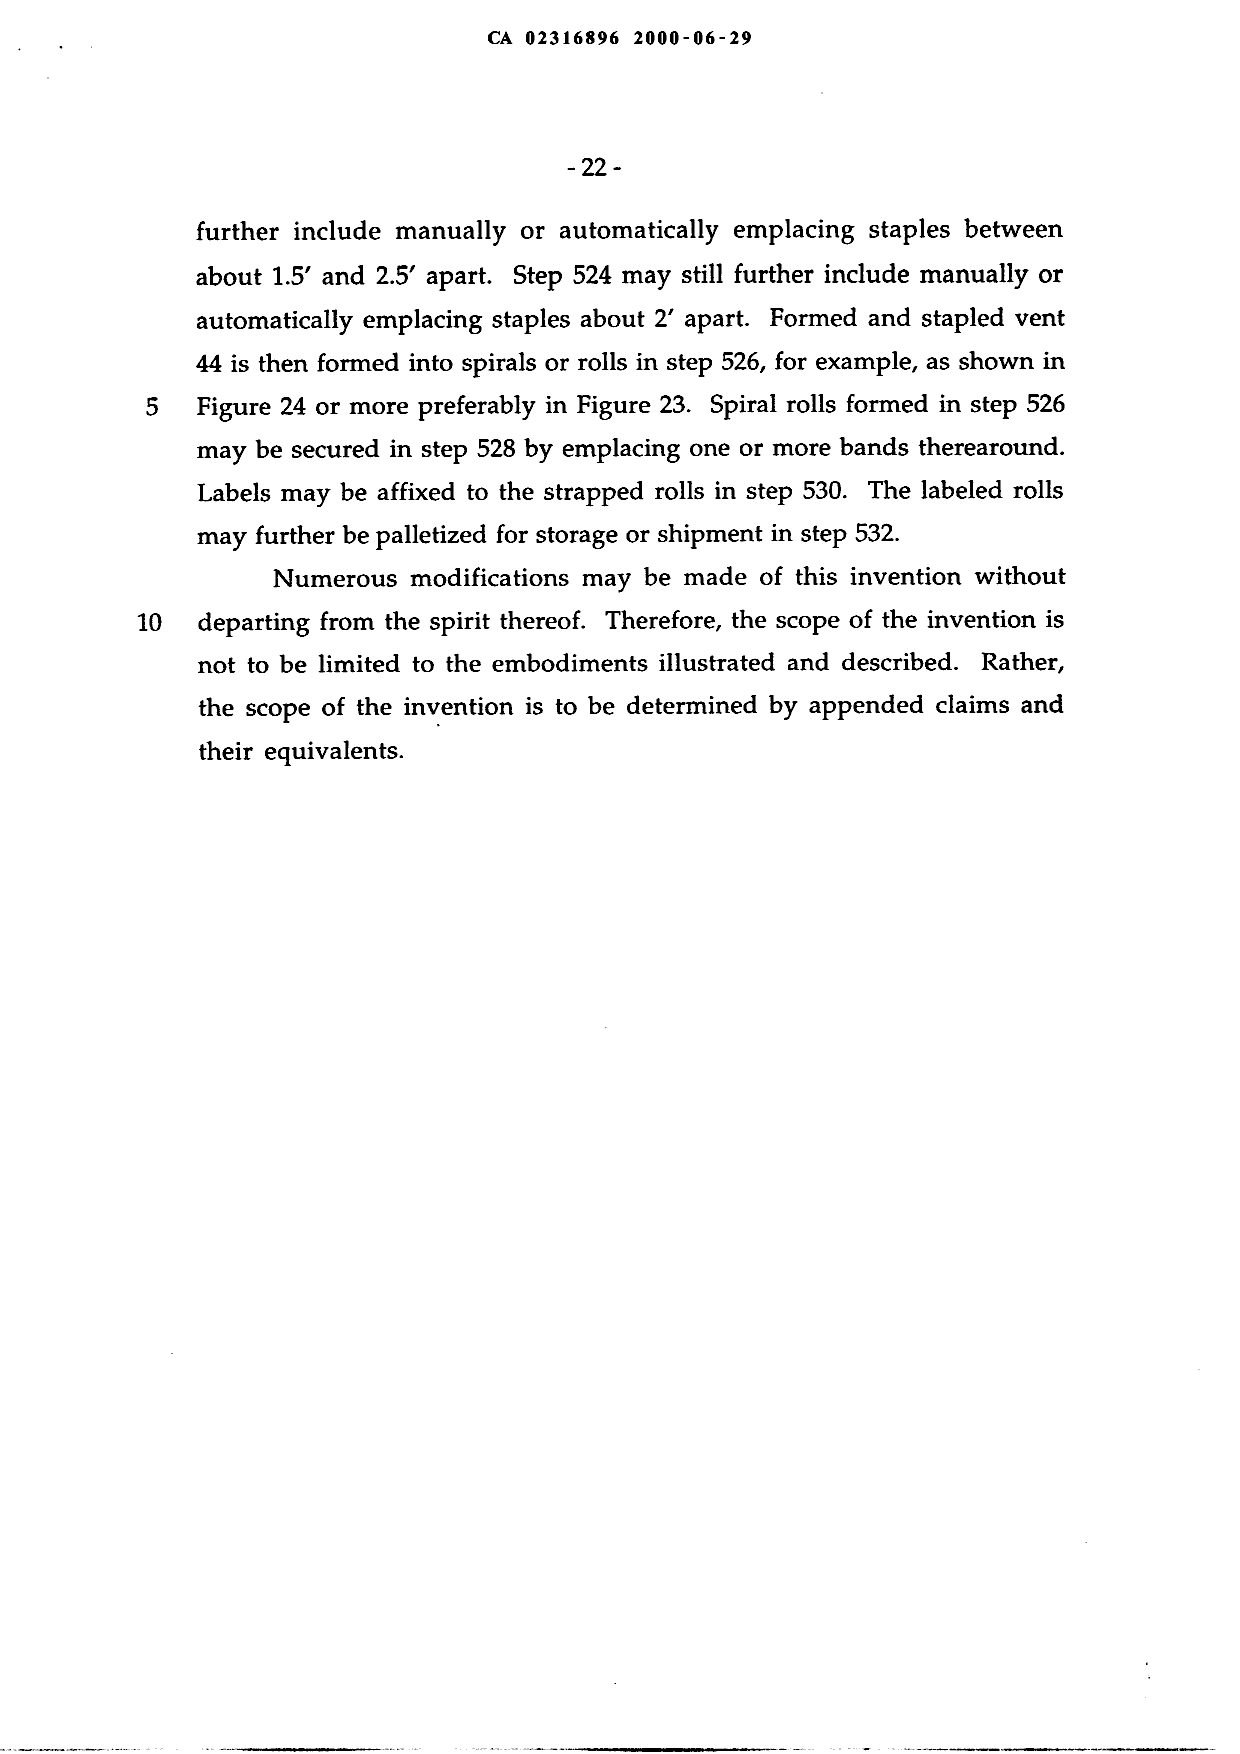 Canadian Patent Document 2316896. Description 20060227. Image 27 of 27